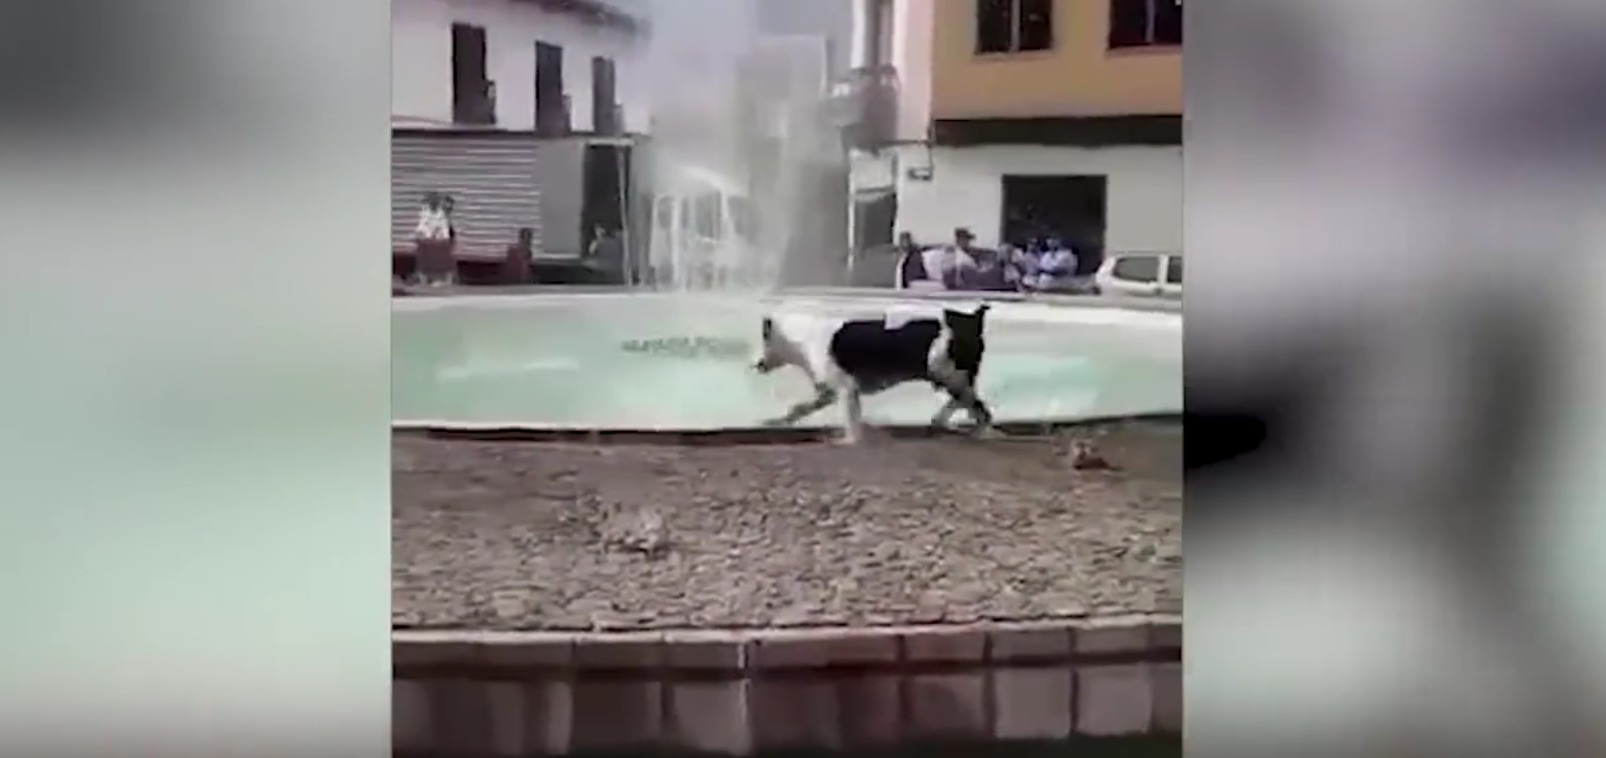 Il cane vede una fontana: la sua reazione è incontenibile  [VIDEO]